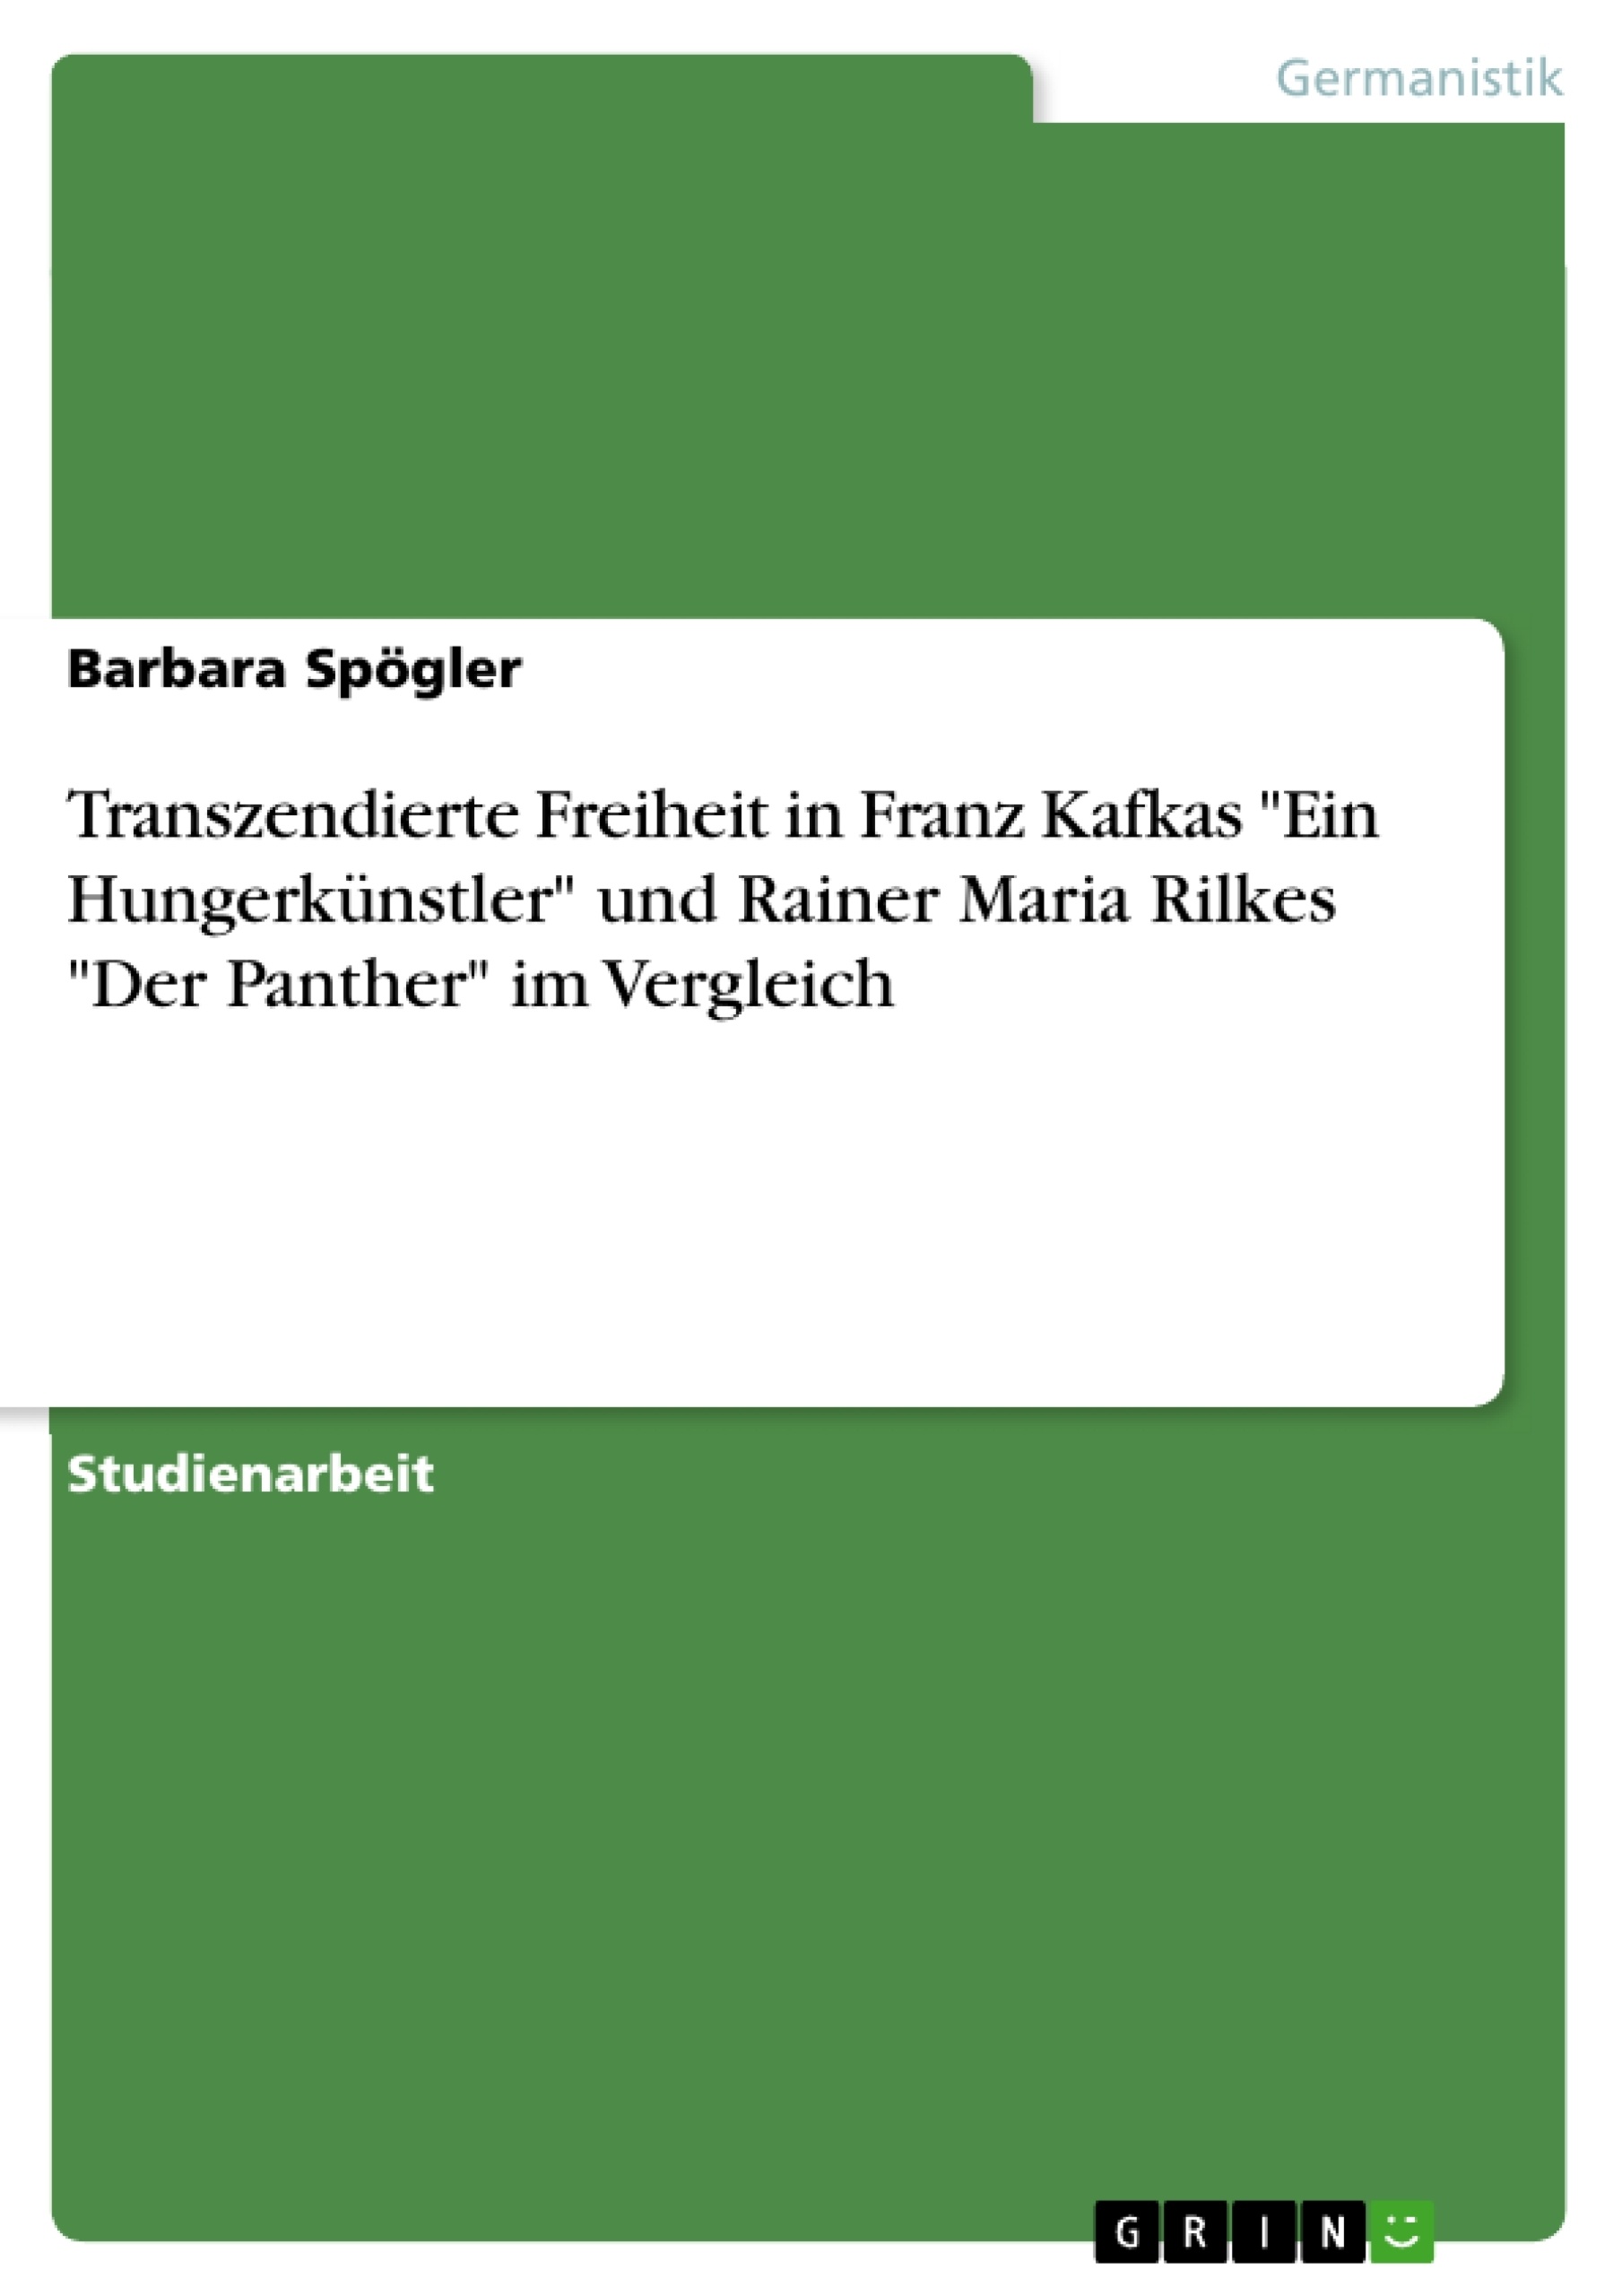 Título: Transzendierte Freiheit in Franz Kafkas "Ein Hungerkünstler" und Rainer Maria Rilkes "Der Panther" im Vergleich